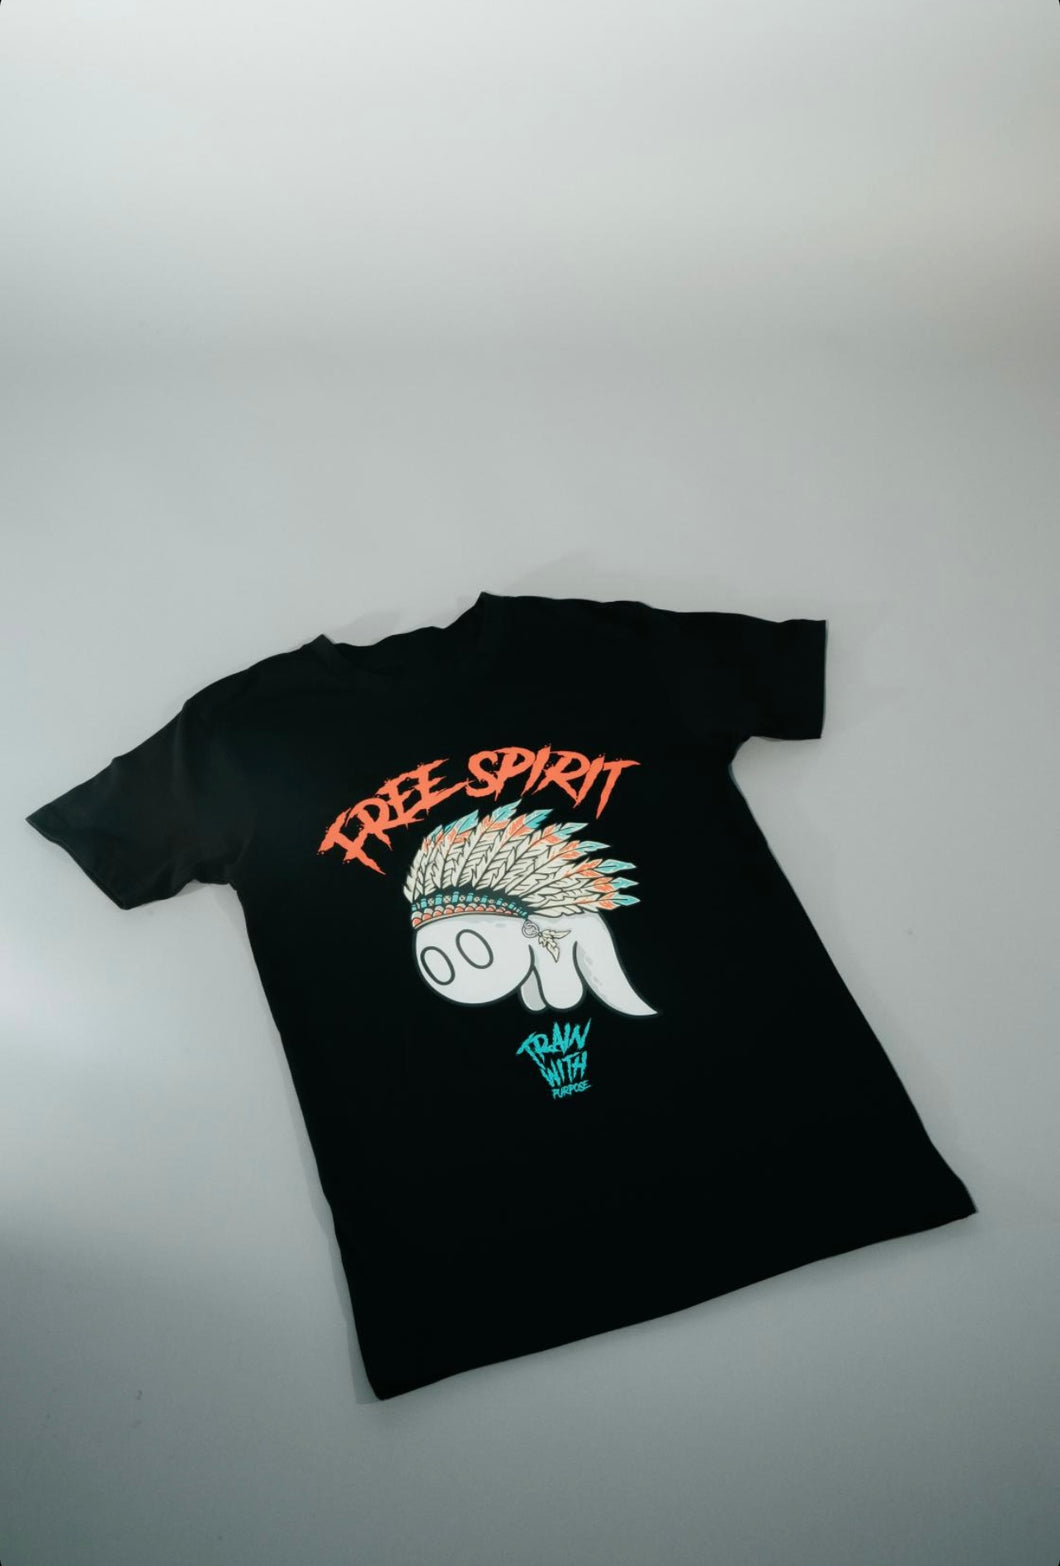 Free Spirit Tee